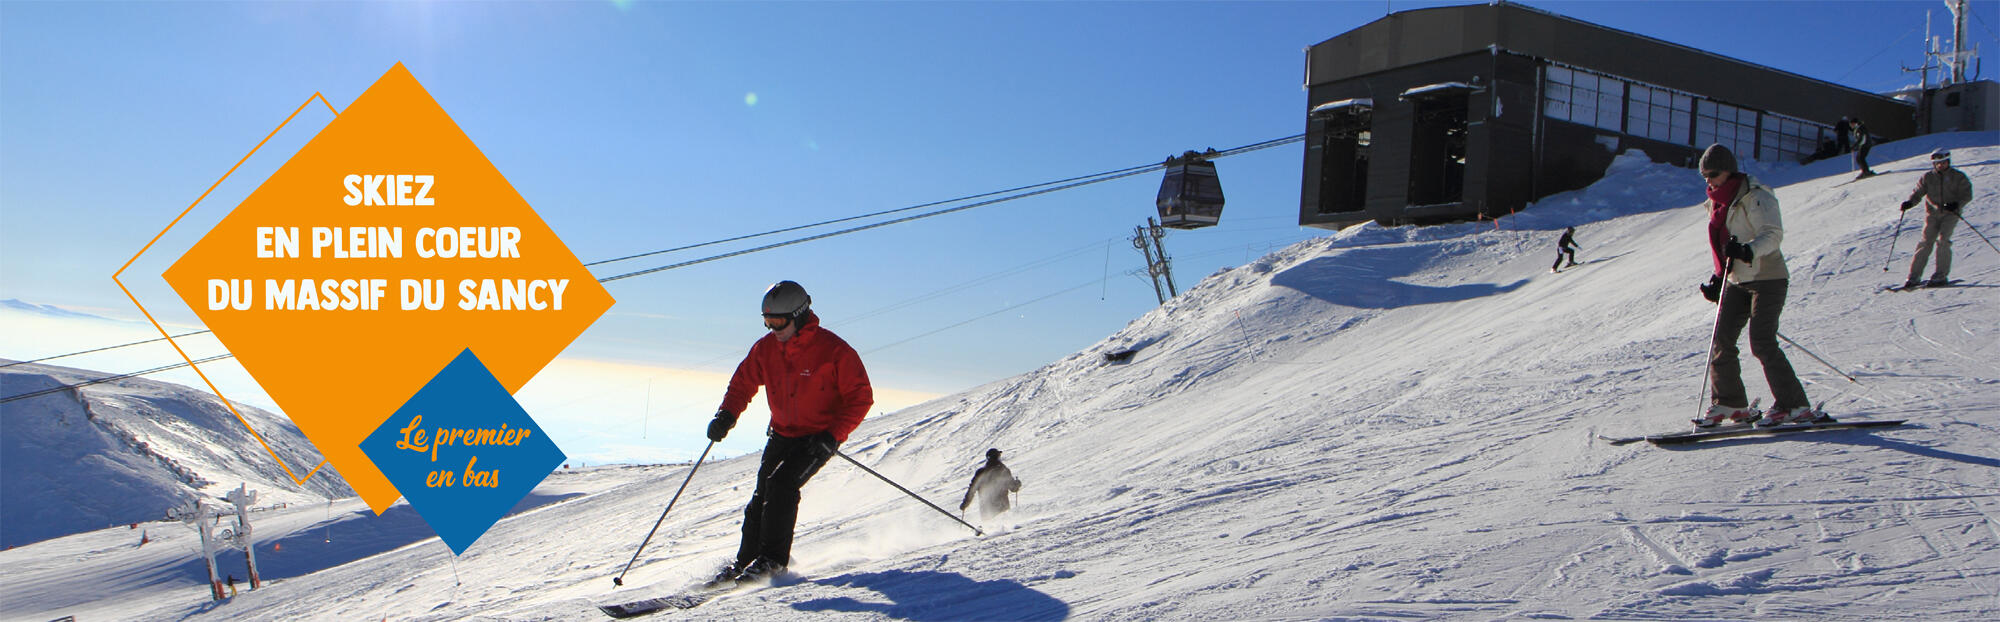 ◅ Tubing et draisienne, SAEML Pavin-Sancy, vente de forfaits ski